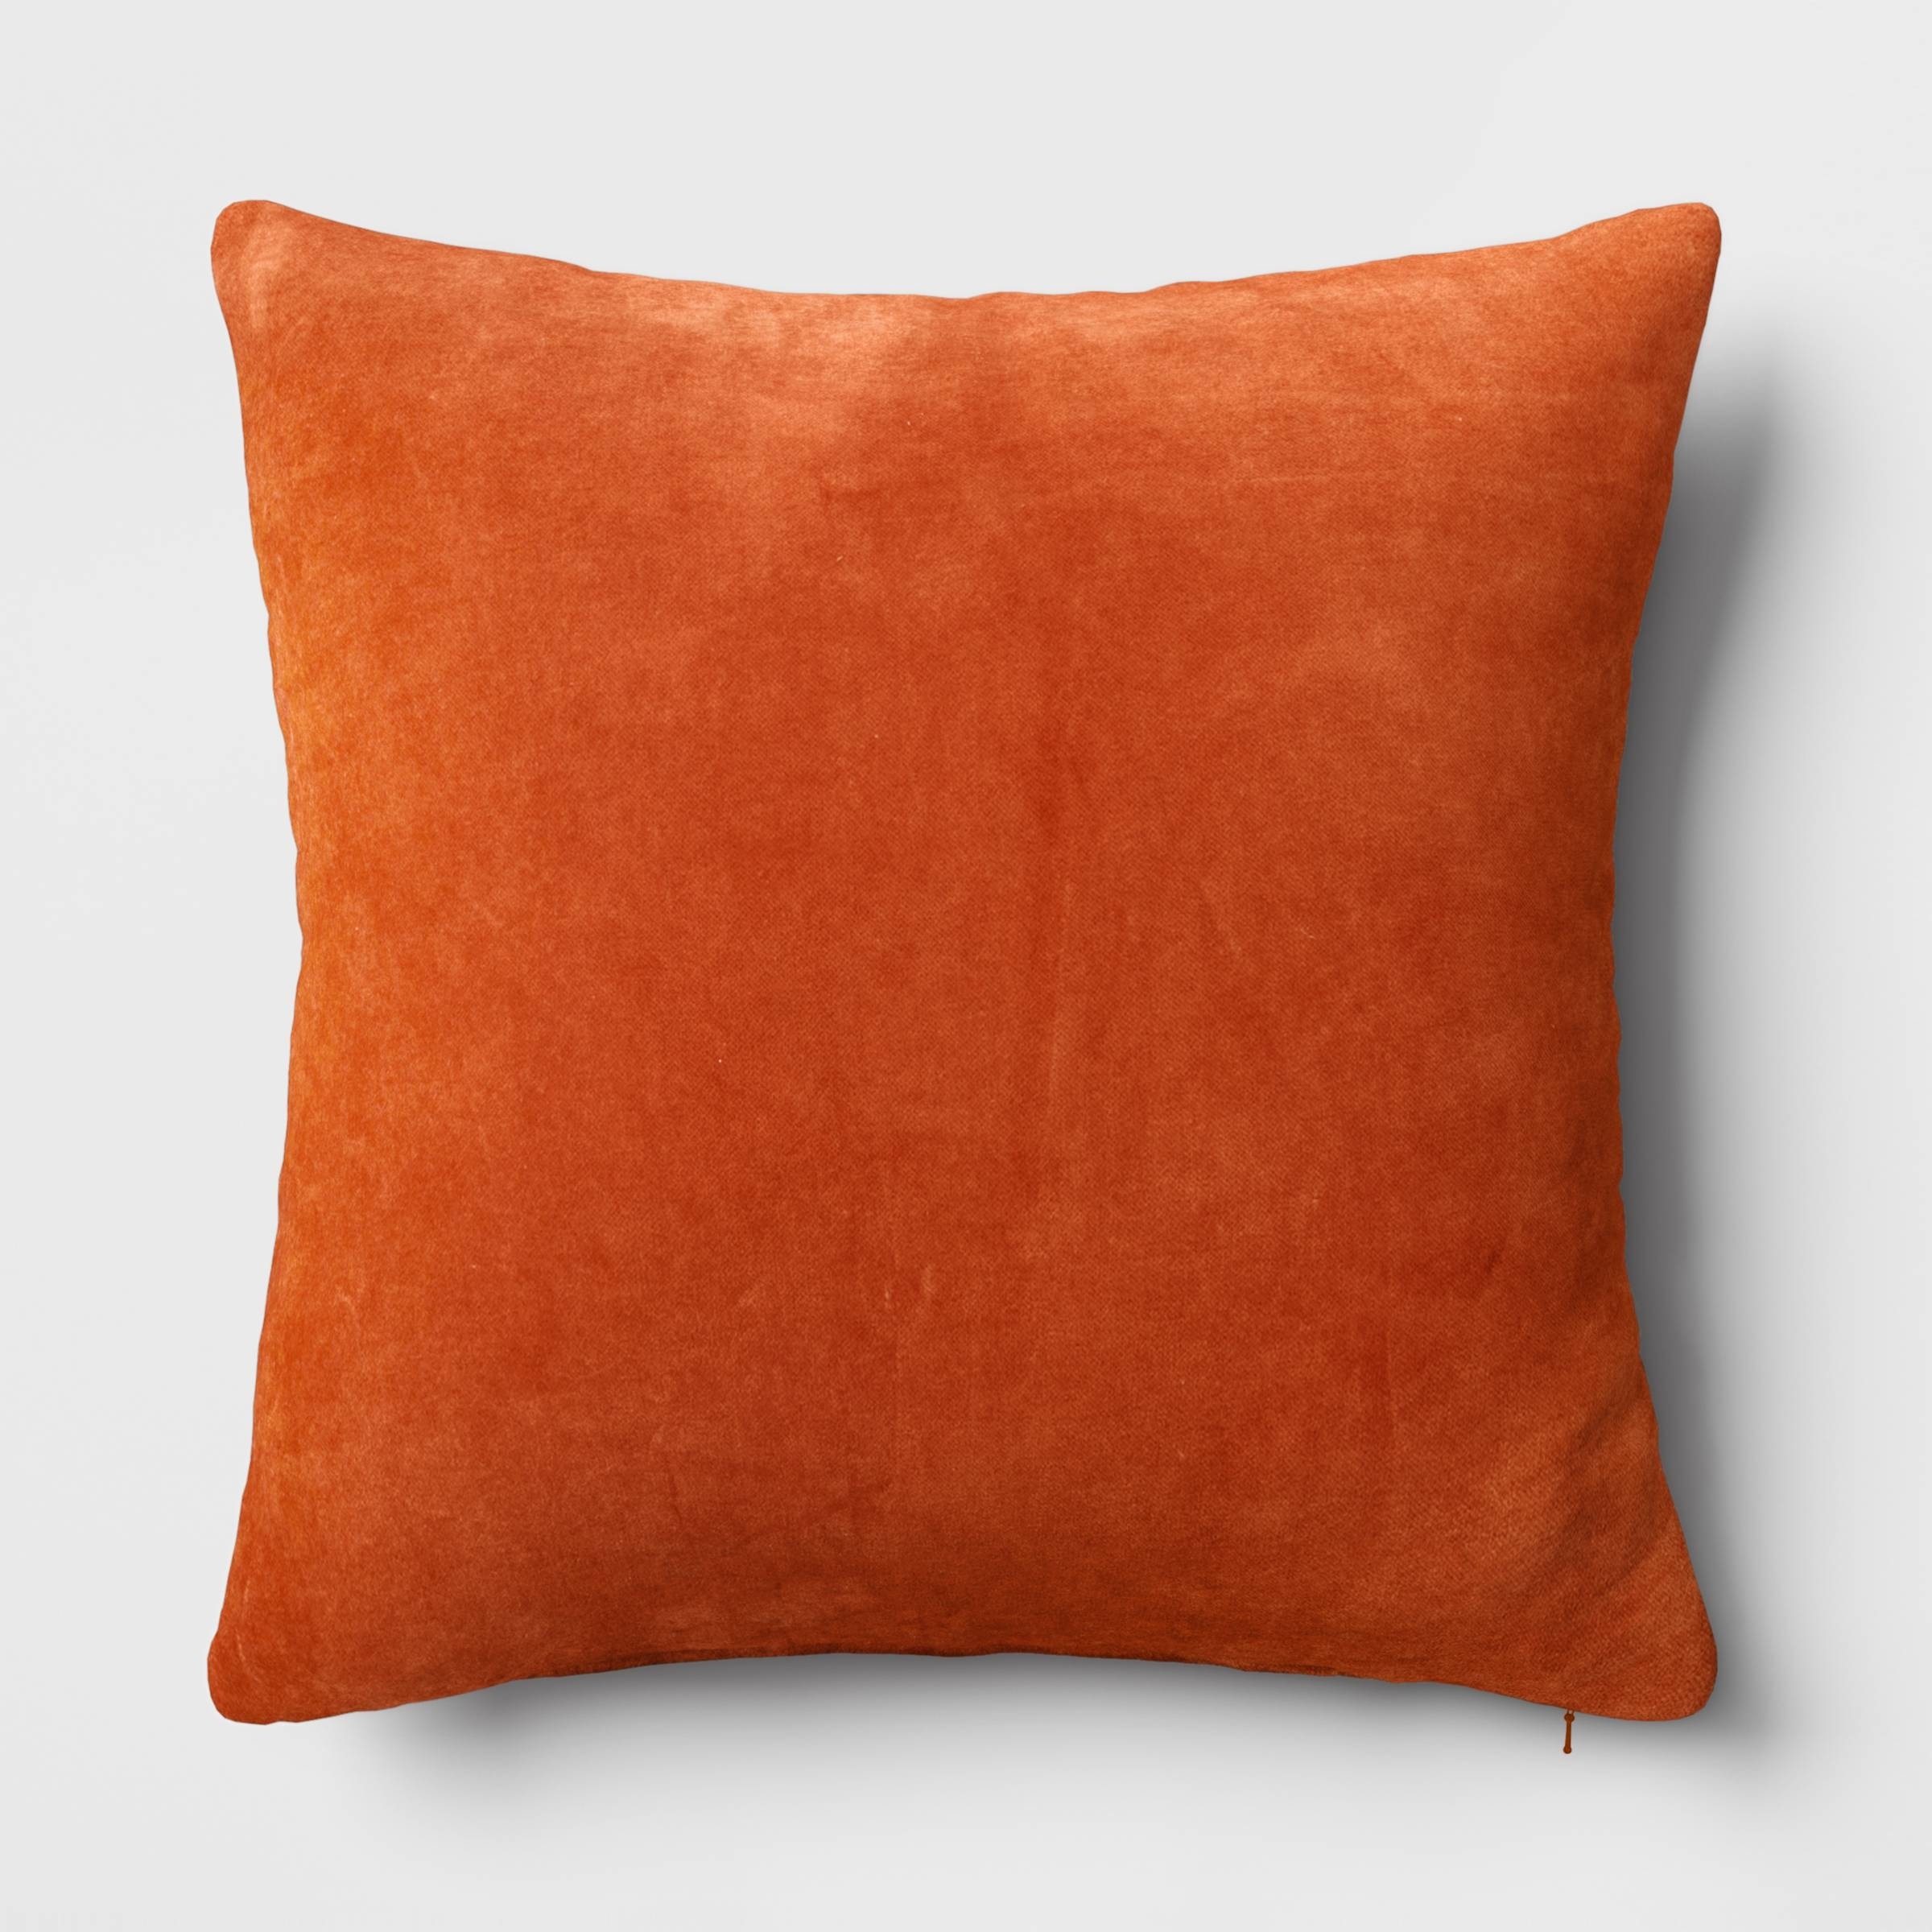 the orange velvet square pillow